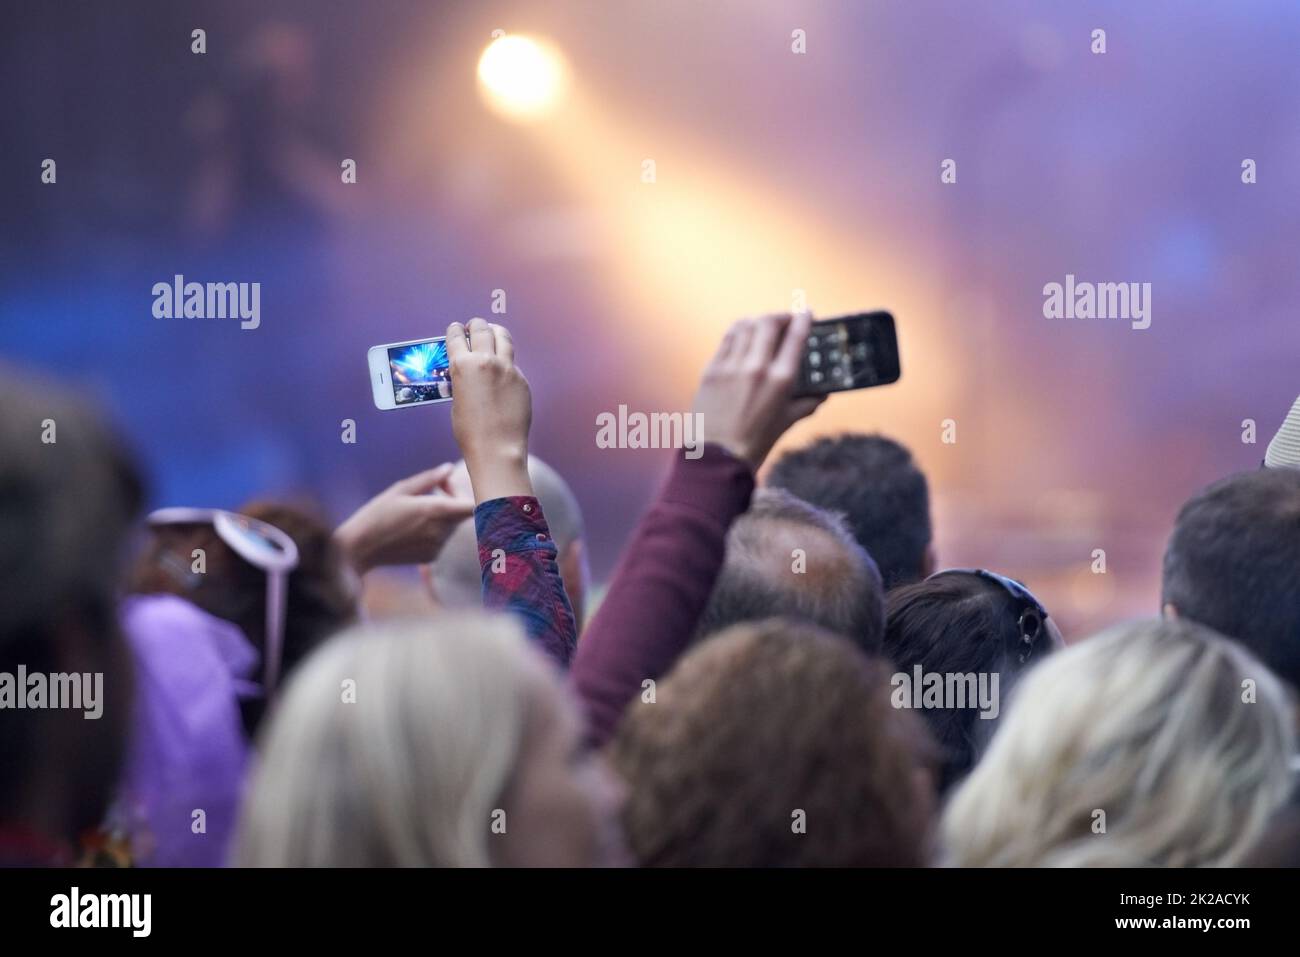 Immortalisez l'instant présent. Vue arrière d'une foule lors d'un festival de musique avec deux personnes tenant leur téléphone photo. Banque D'Images